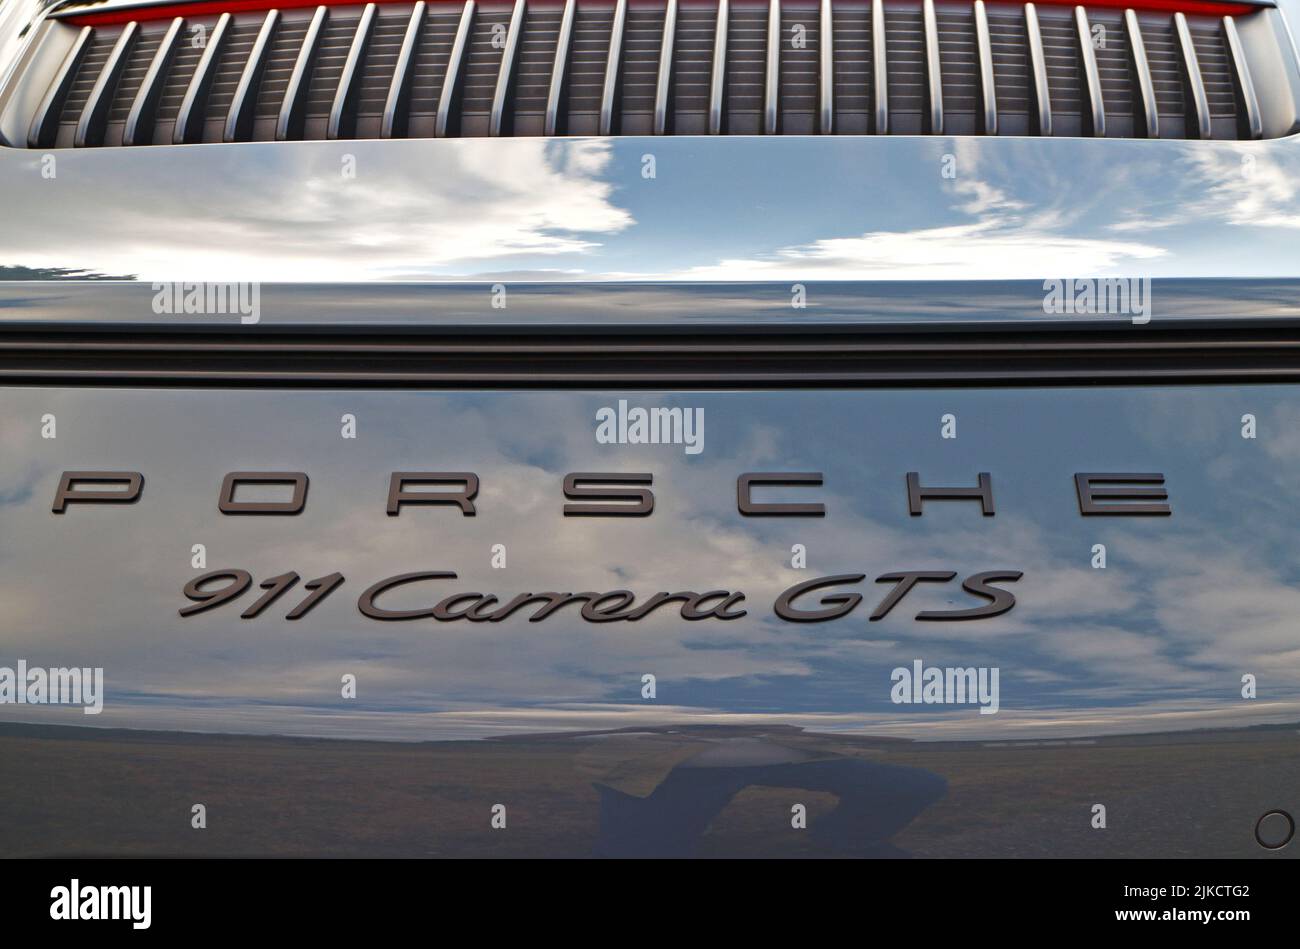 Detalle de la designación del modelo en el guarnecido trasero de un Porsche 911 Carrera GTS. Foto de stock